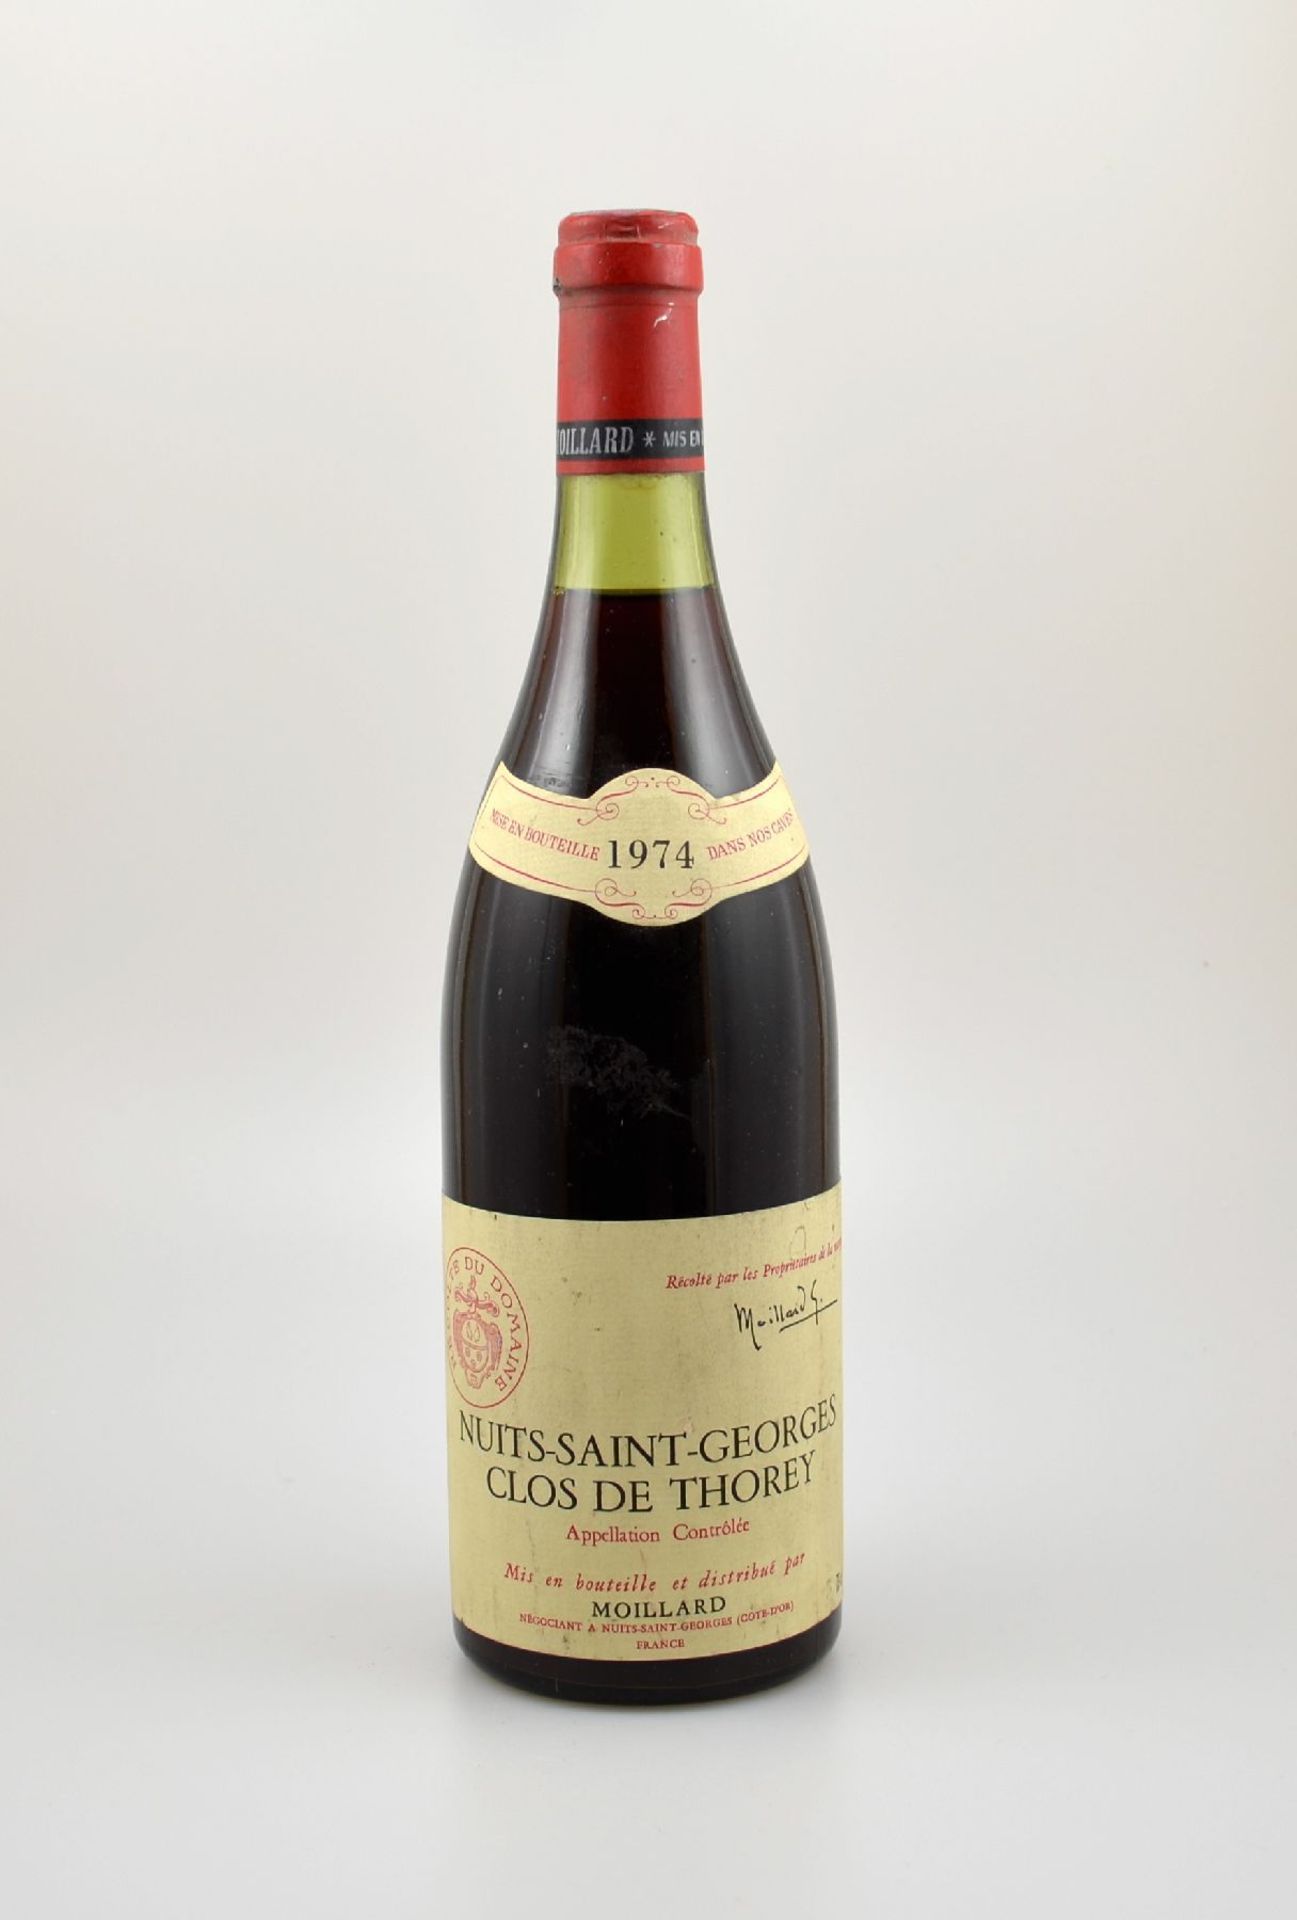 2 Flaschen 1974 Nuits-Saint-Georges Clos de Thorey, je ca. 73 cl, Abstände zwischen Kapsel und Wein: